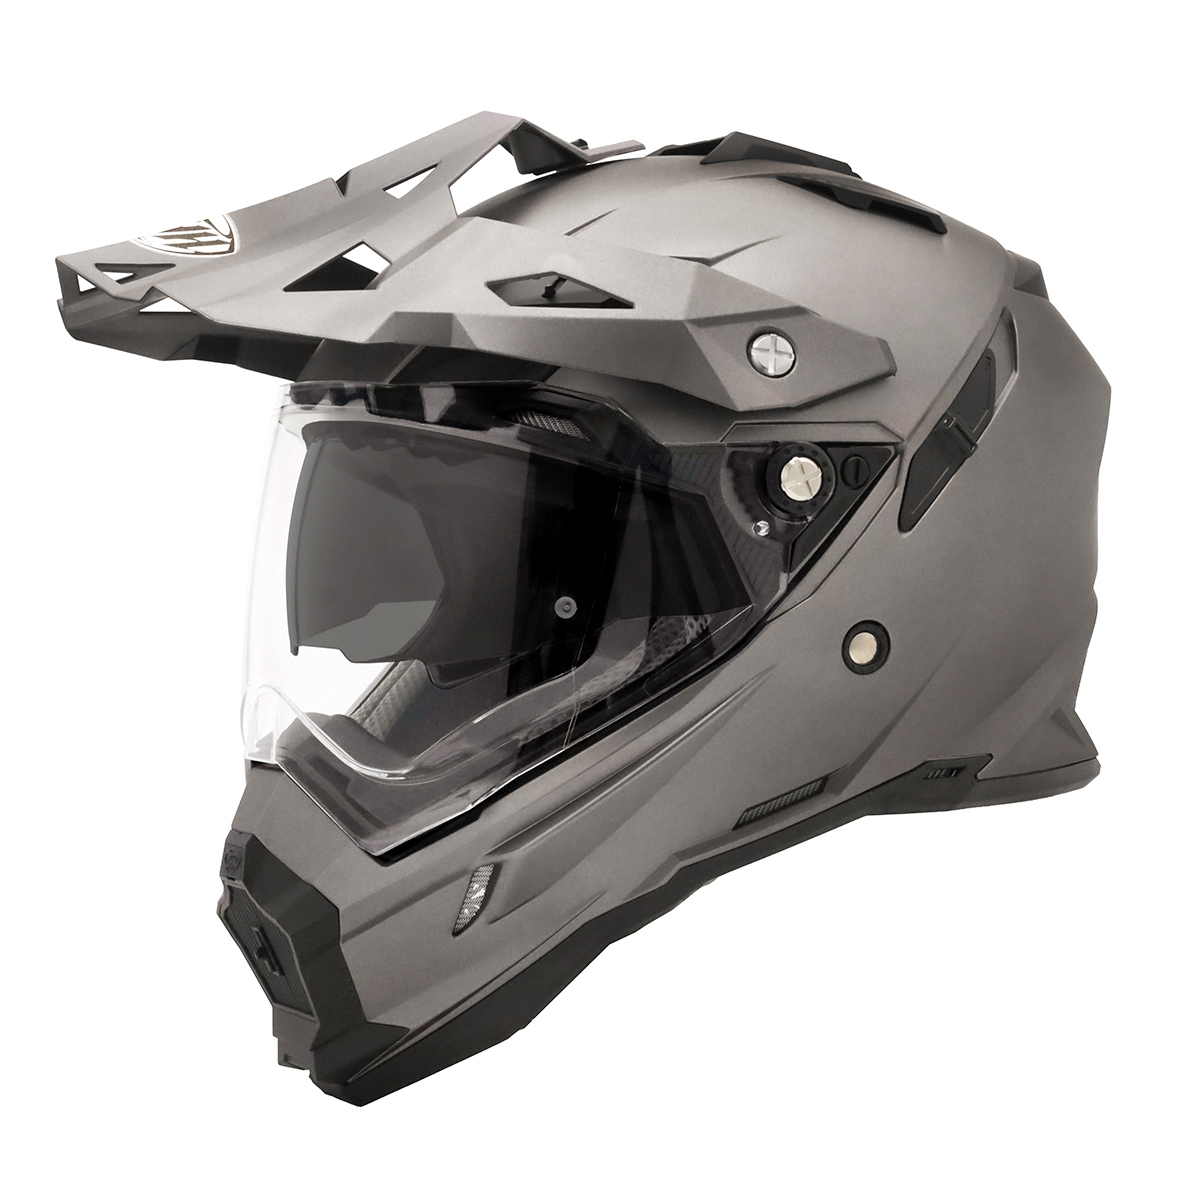 THH full-face шлем TX-28 коврик f Lost серый внутренний козырек установка модель off-road модель PinLock соответствует защита оборудование 